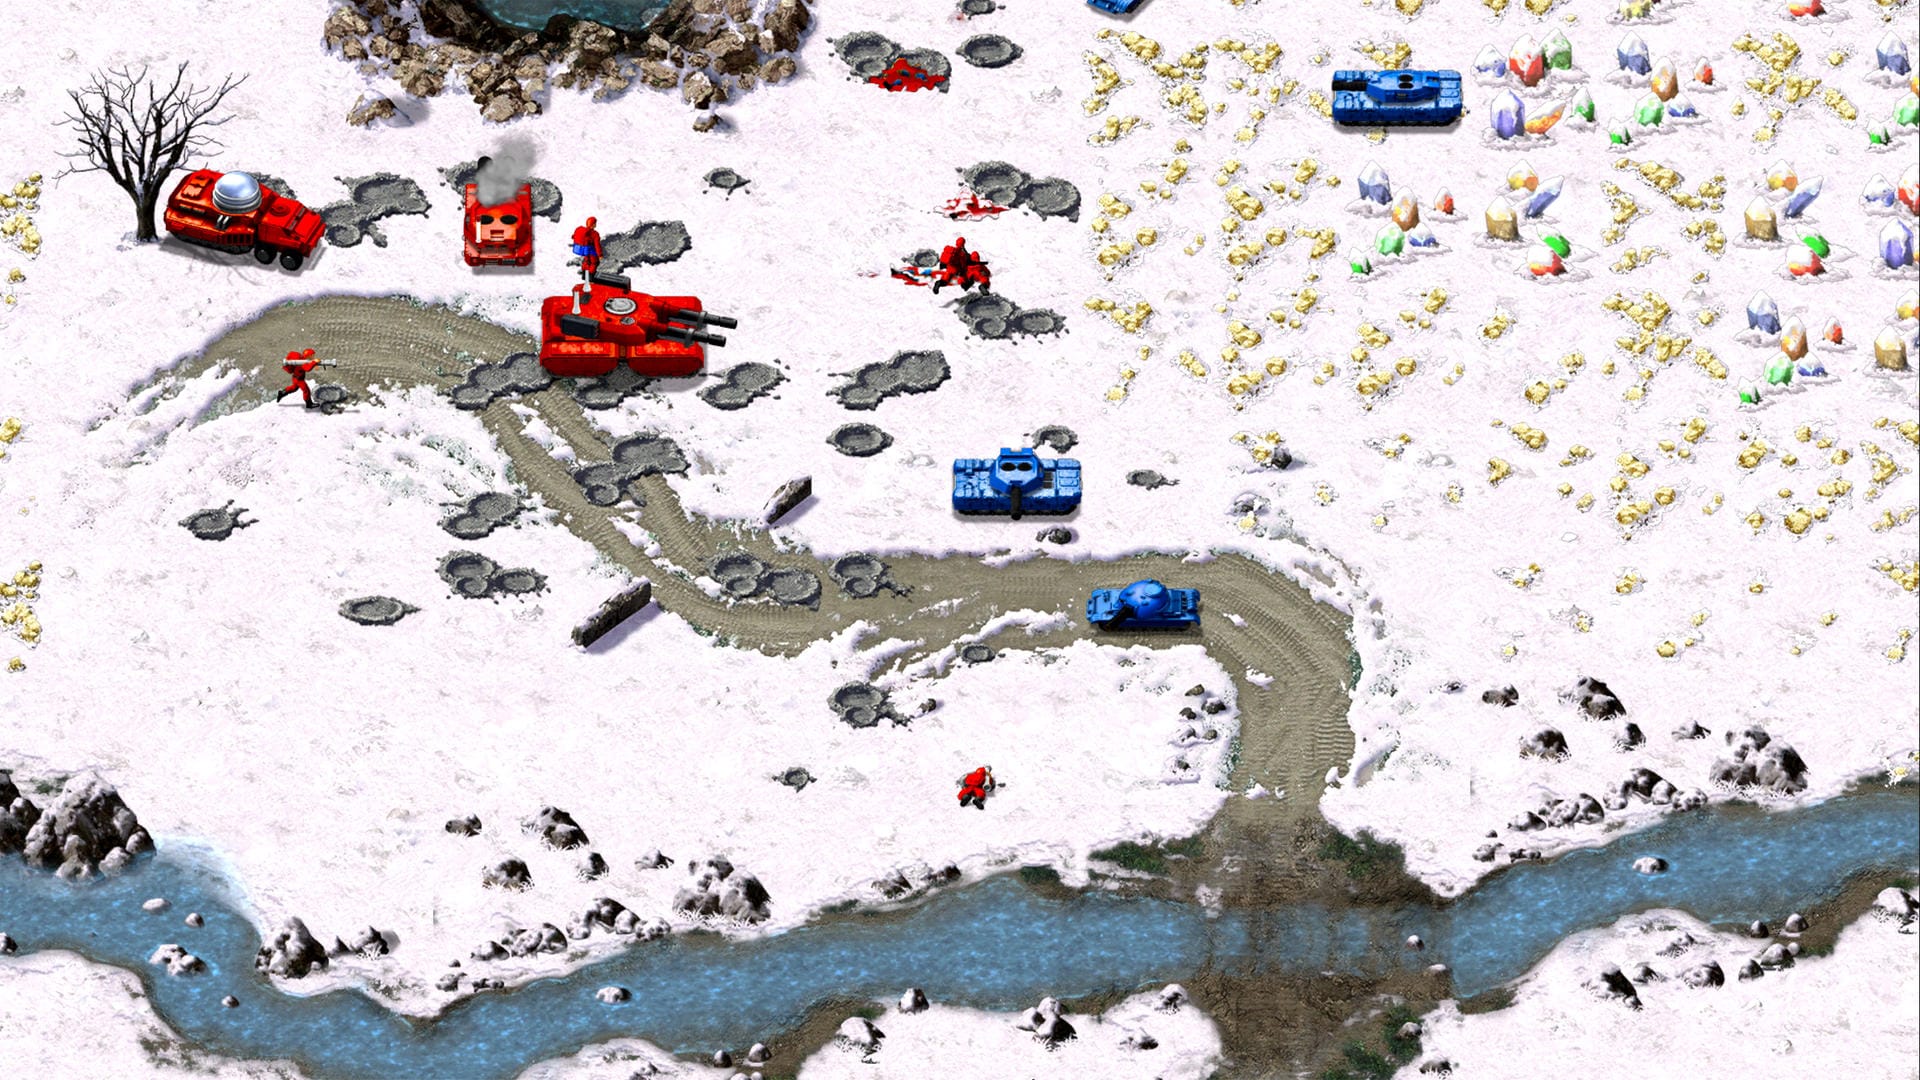 «Command & Conquer: Remastered» ist eine spielbare Zeitreise